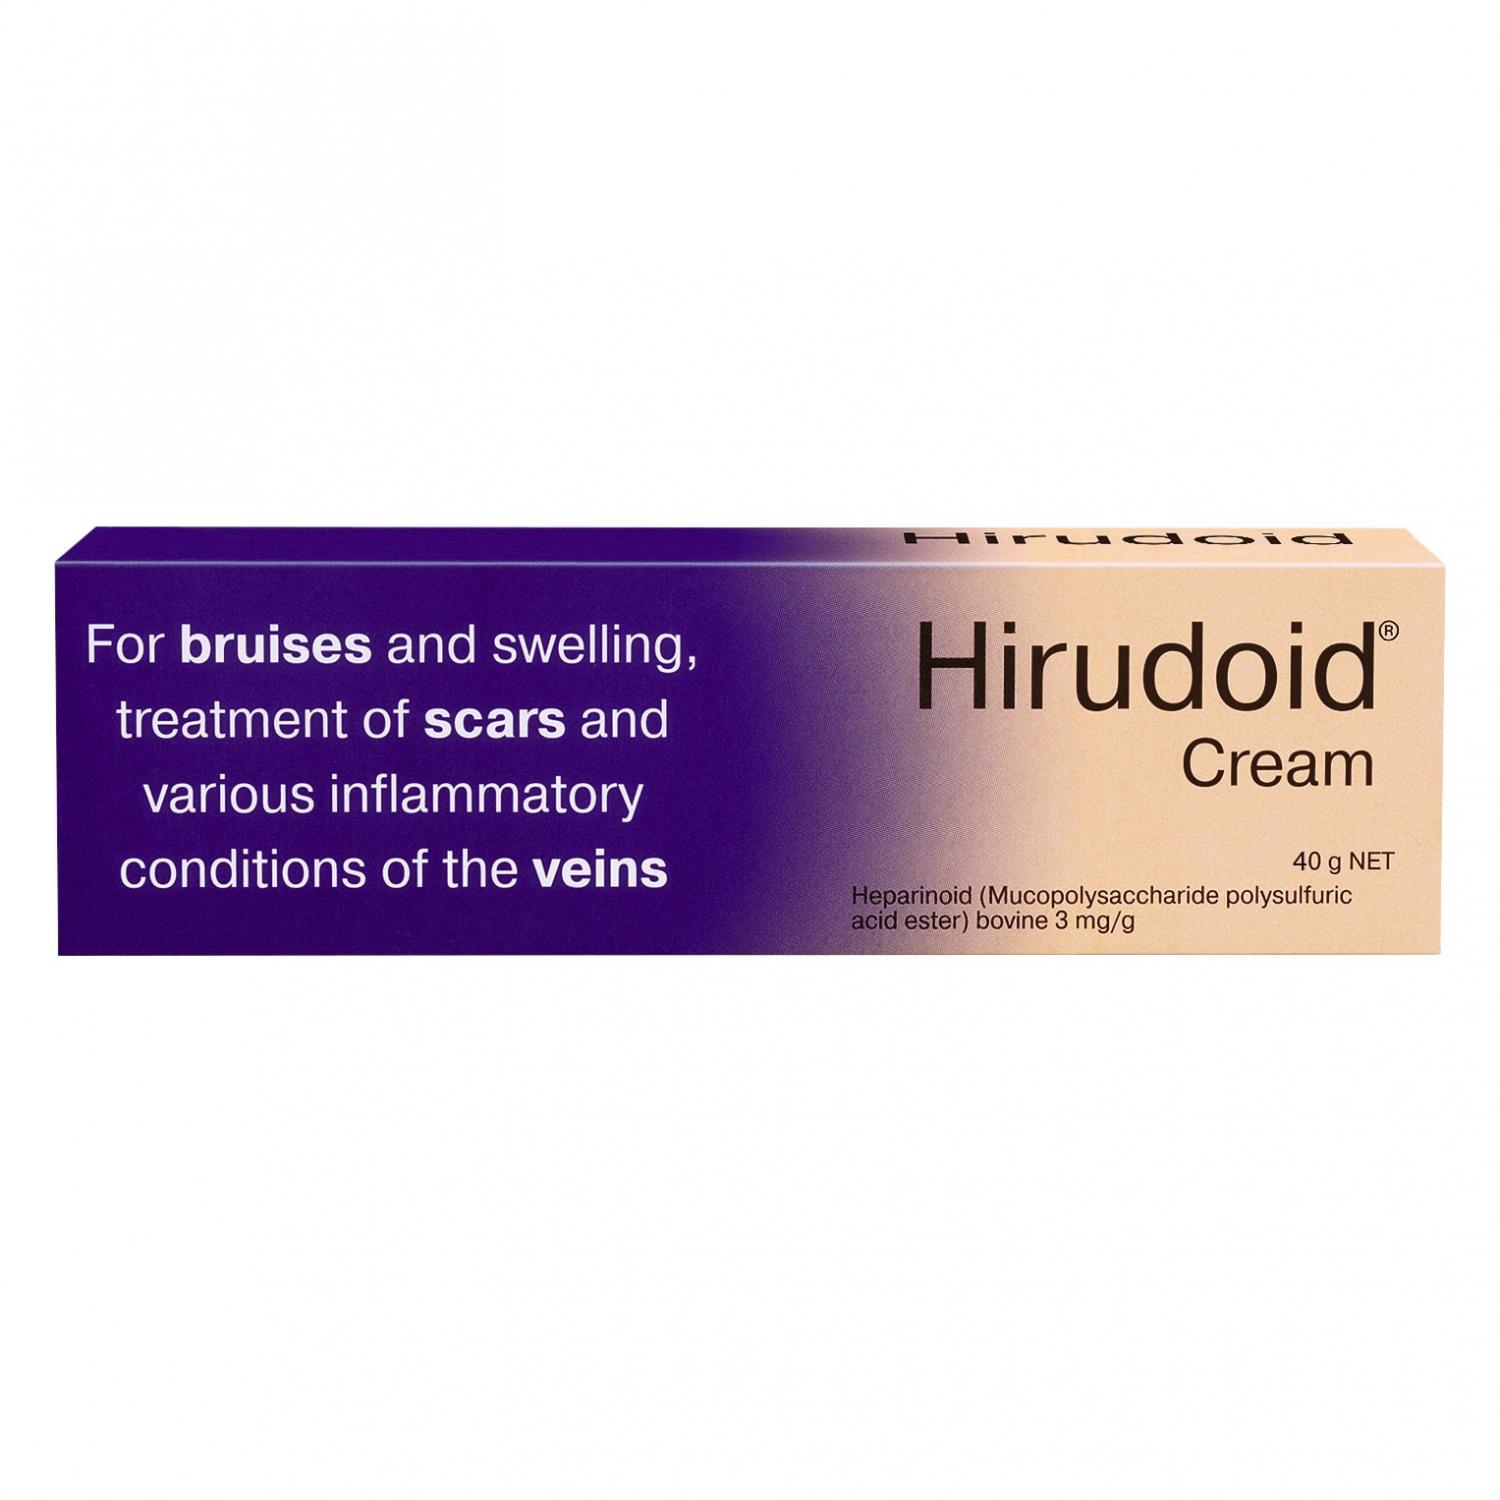 Image 1 for Hirudoid Cream 40g